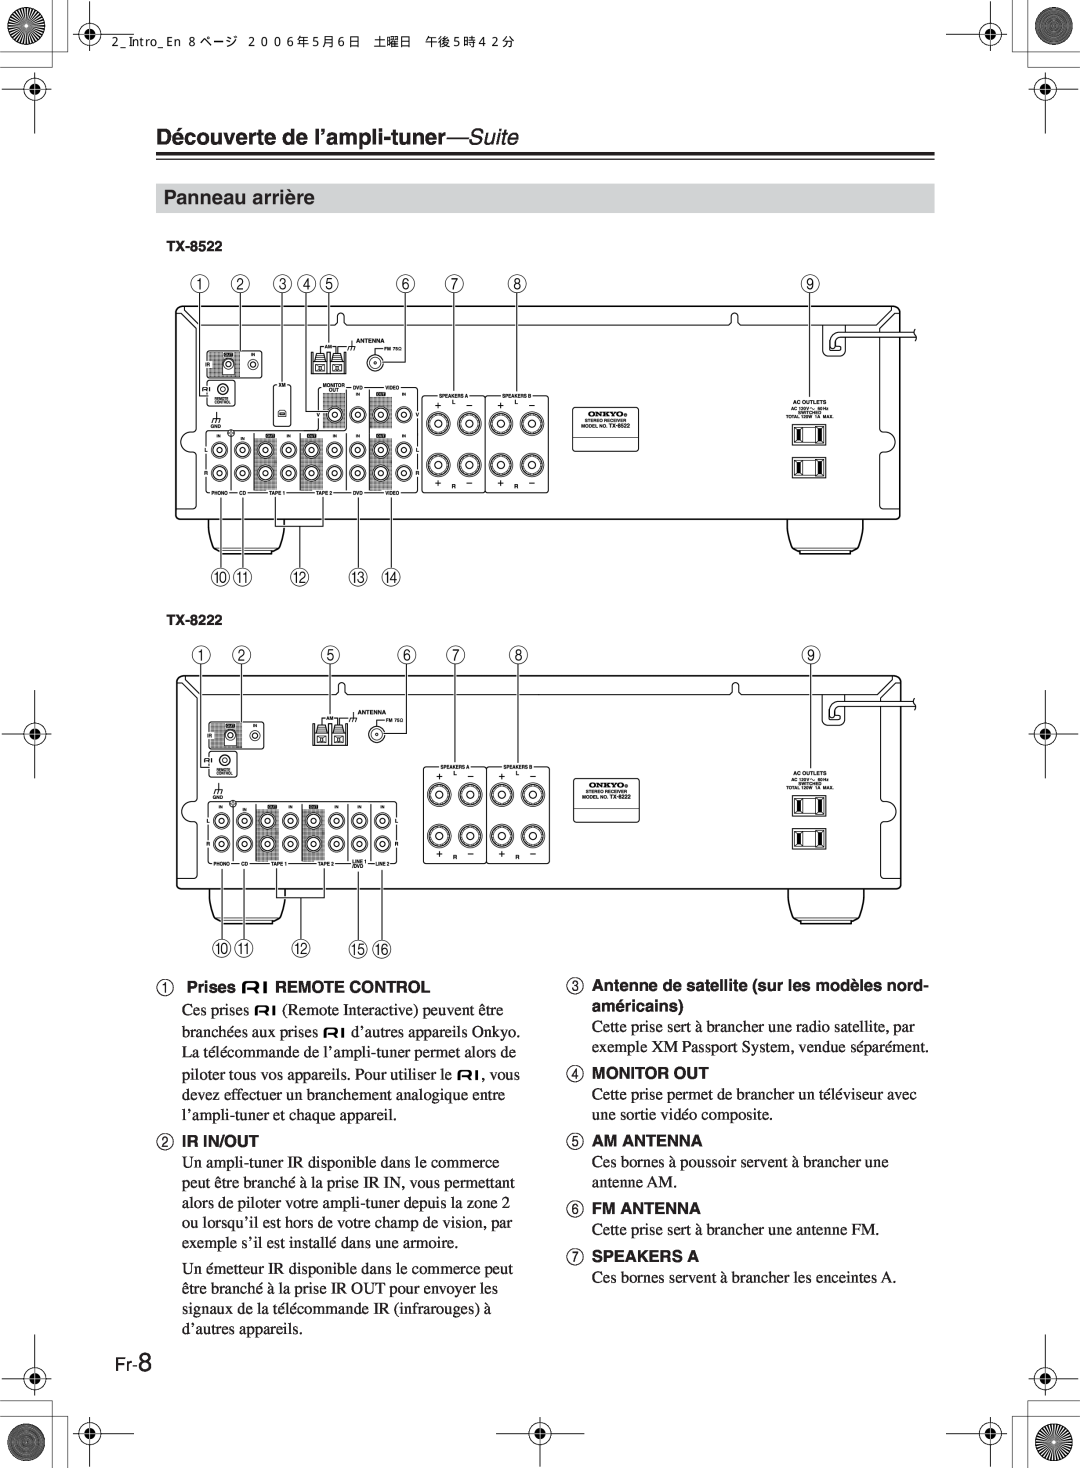 Onkyo TX-8222, TX-8522 manual Panneau arrière, Fr-8, Découverte de l’ampli-tuner—Suite, 1 B 3 45 6 7, Jk L M N, Jk L O P 